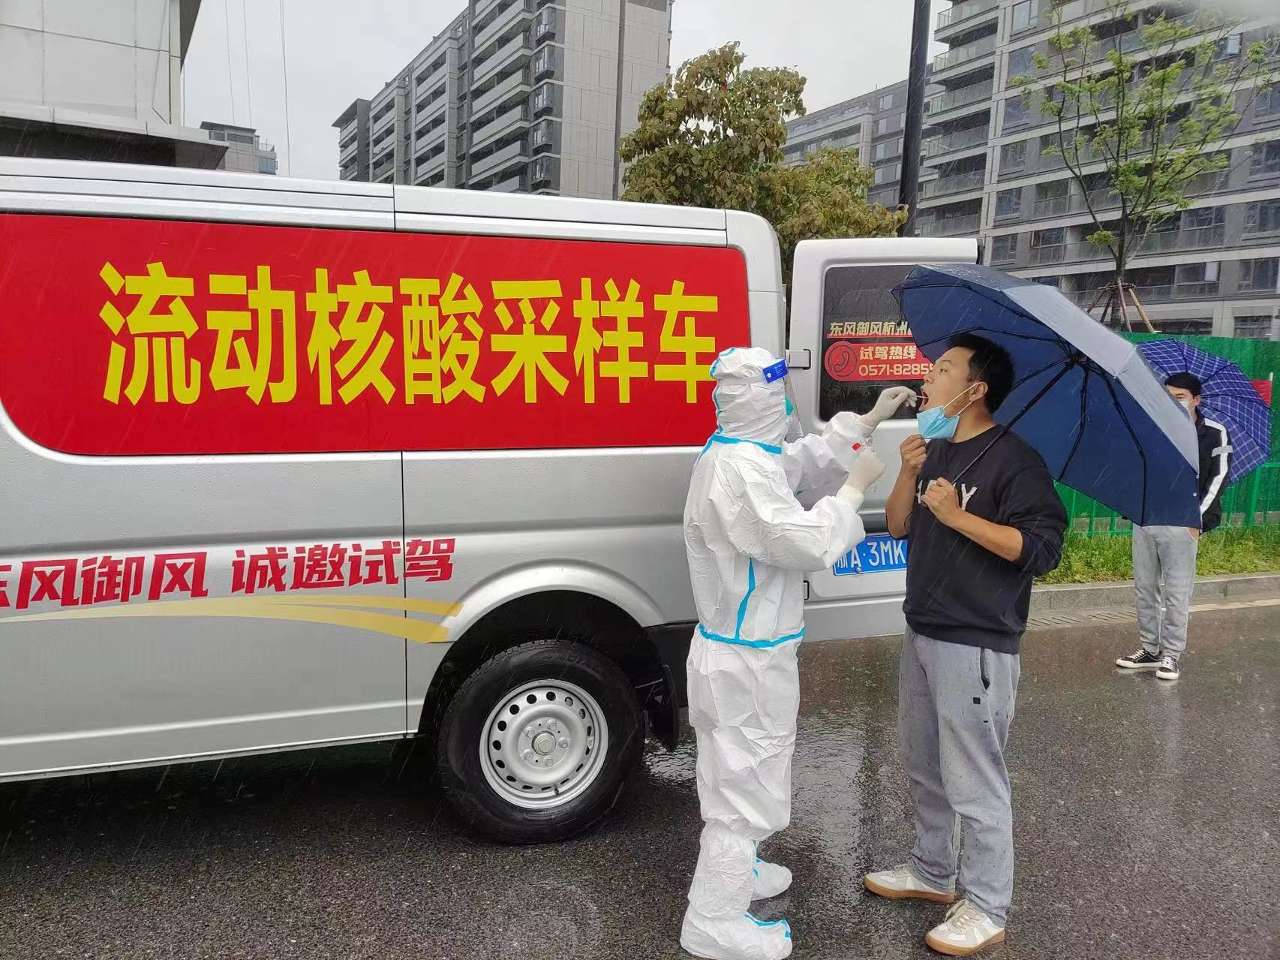 浙江杭州余杭良渚街道流动核酸采样车提供便捷服务